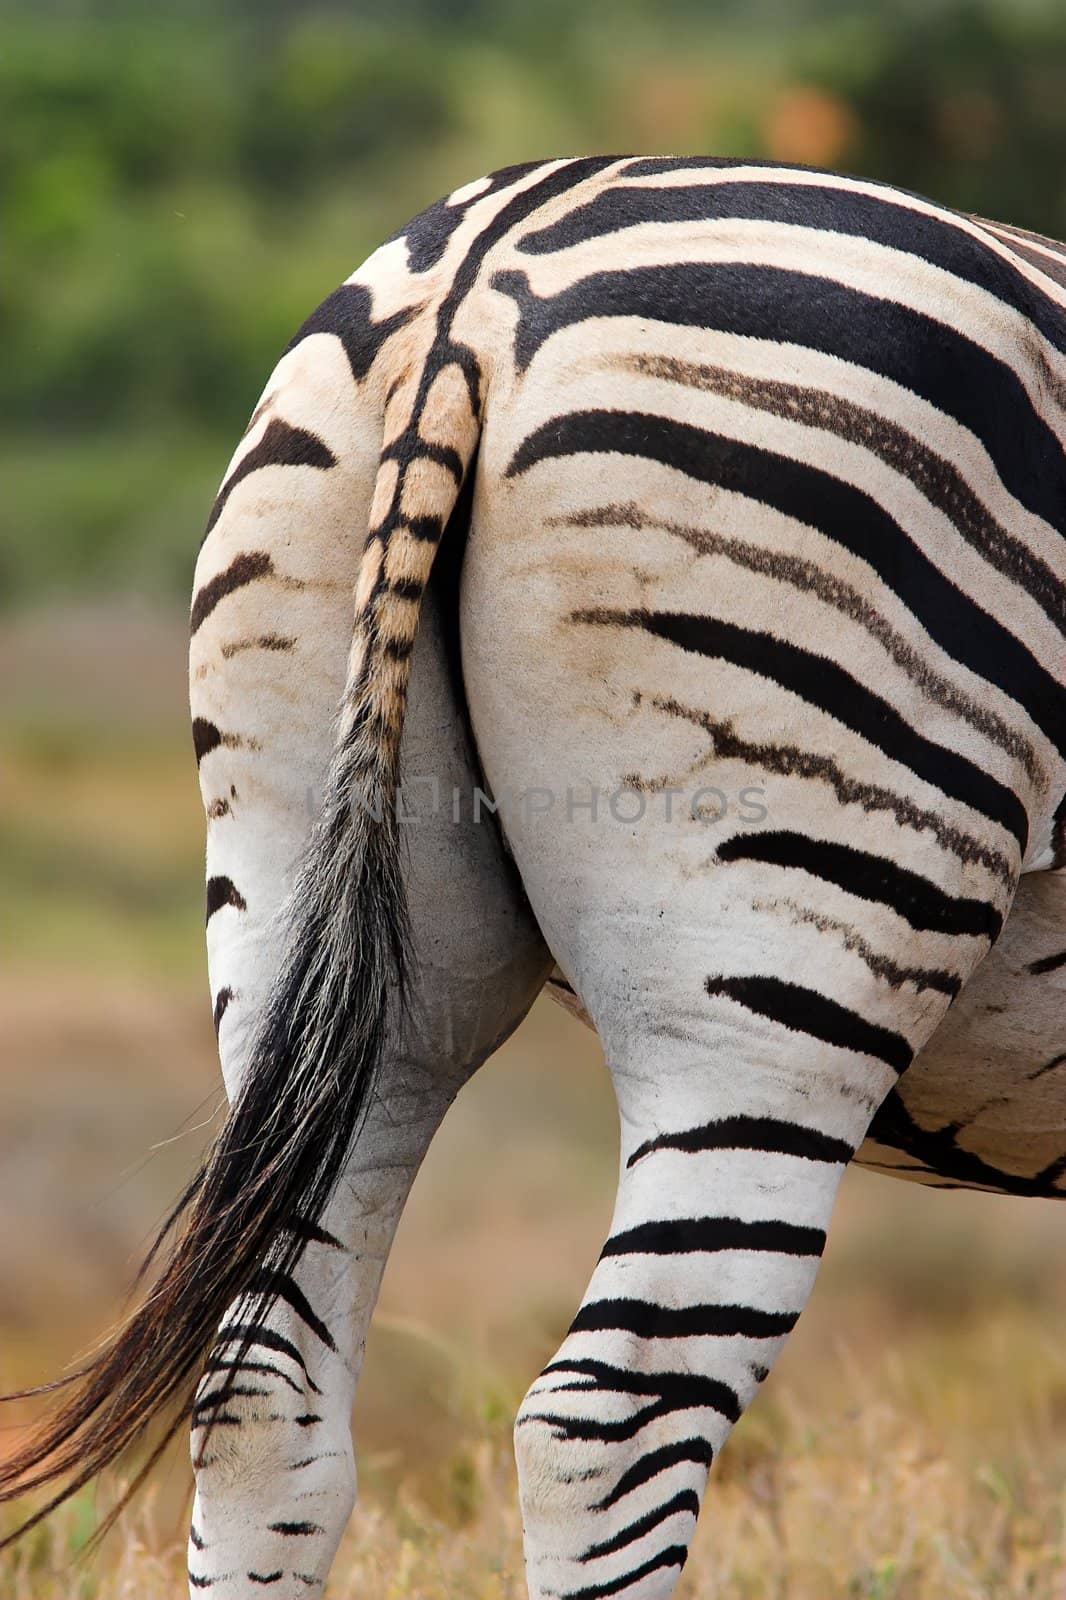 Striped Zebra Rear by nightowlza